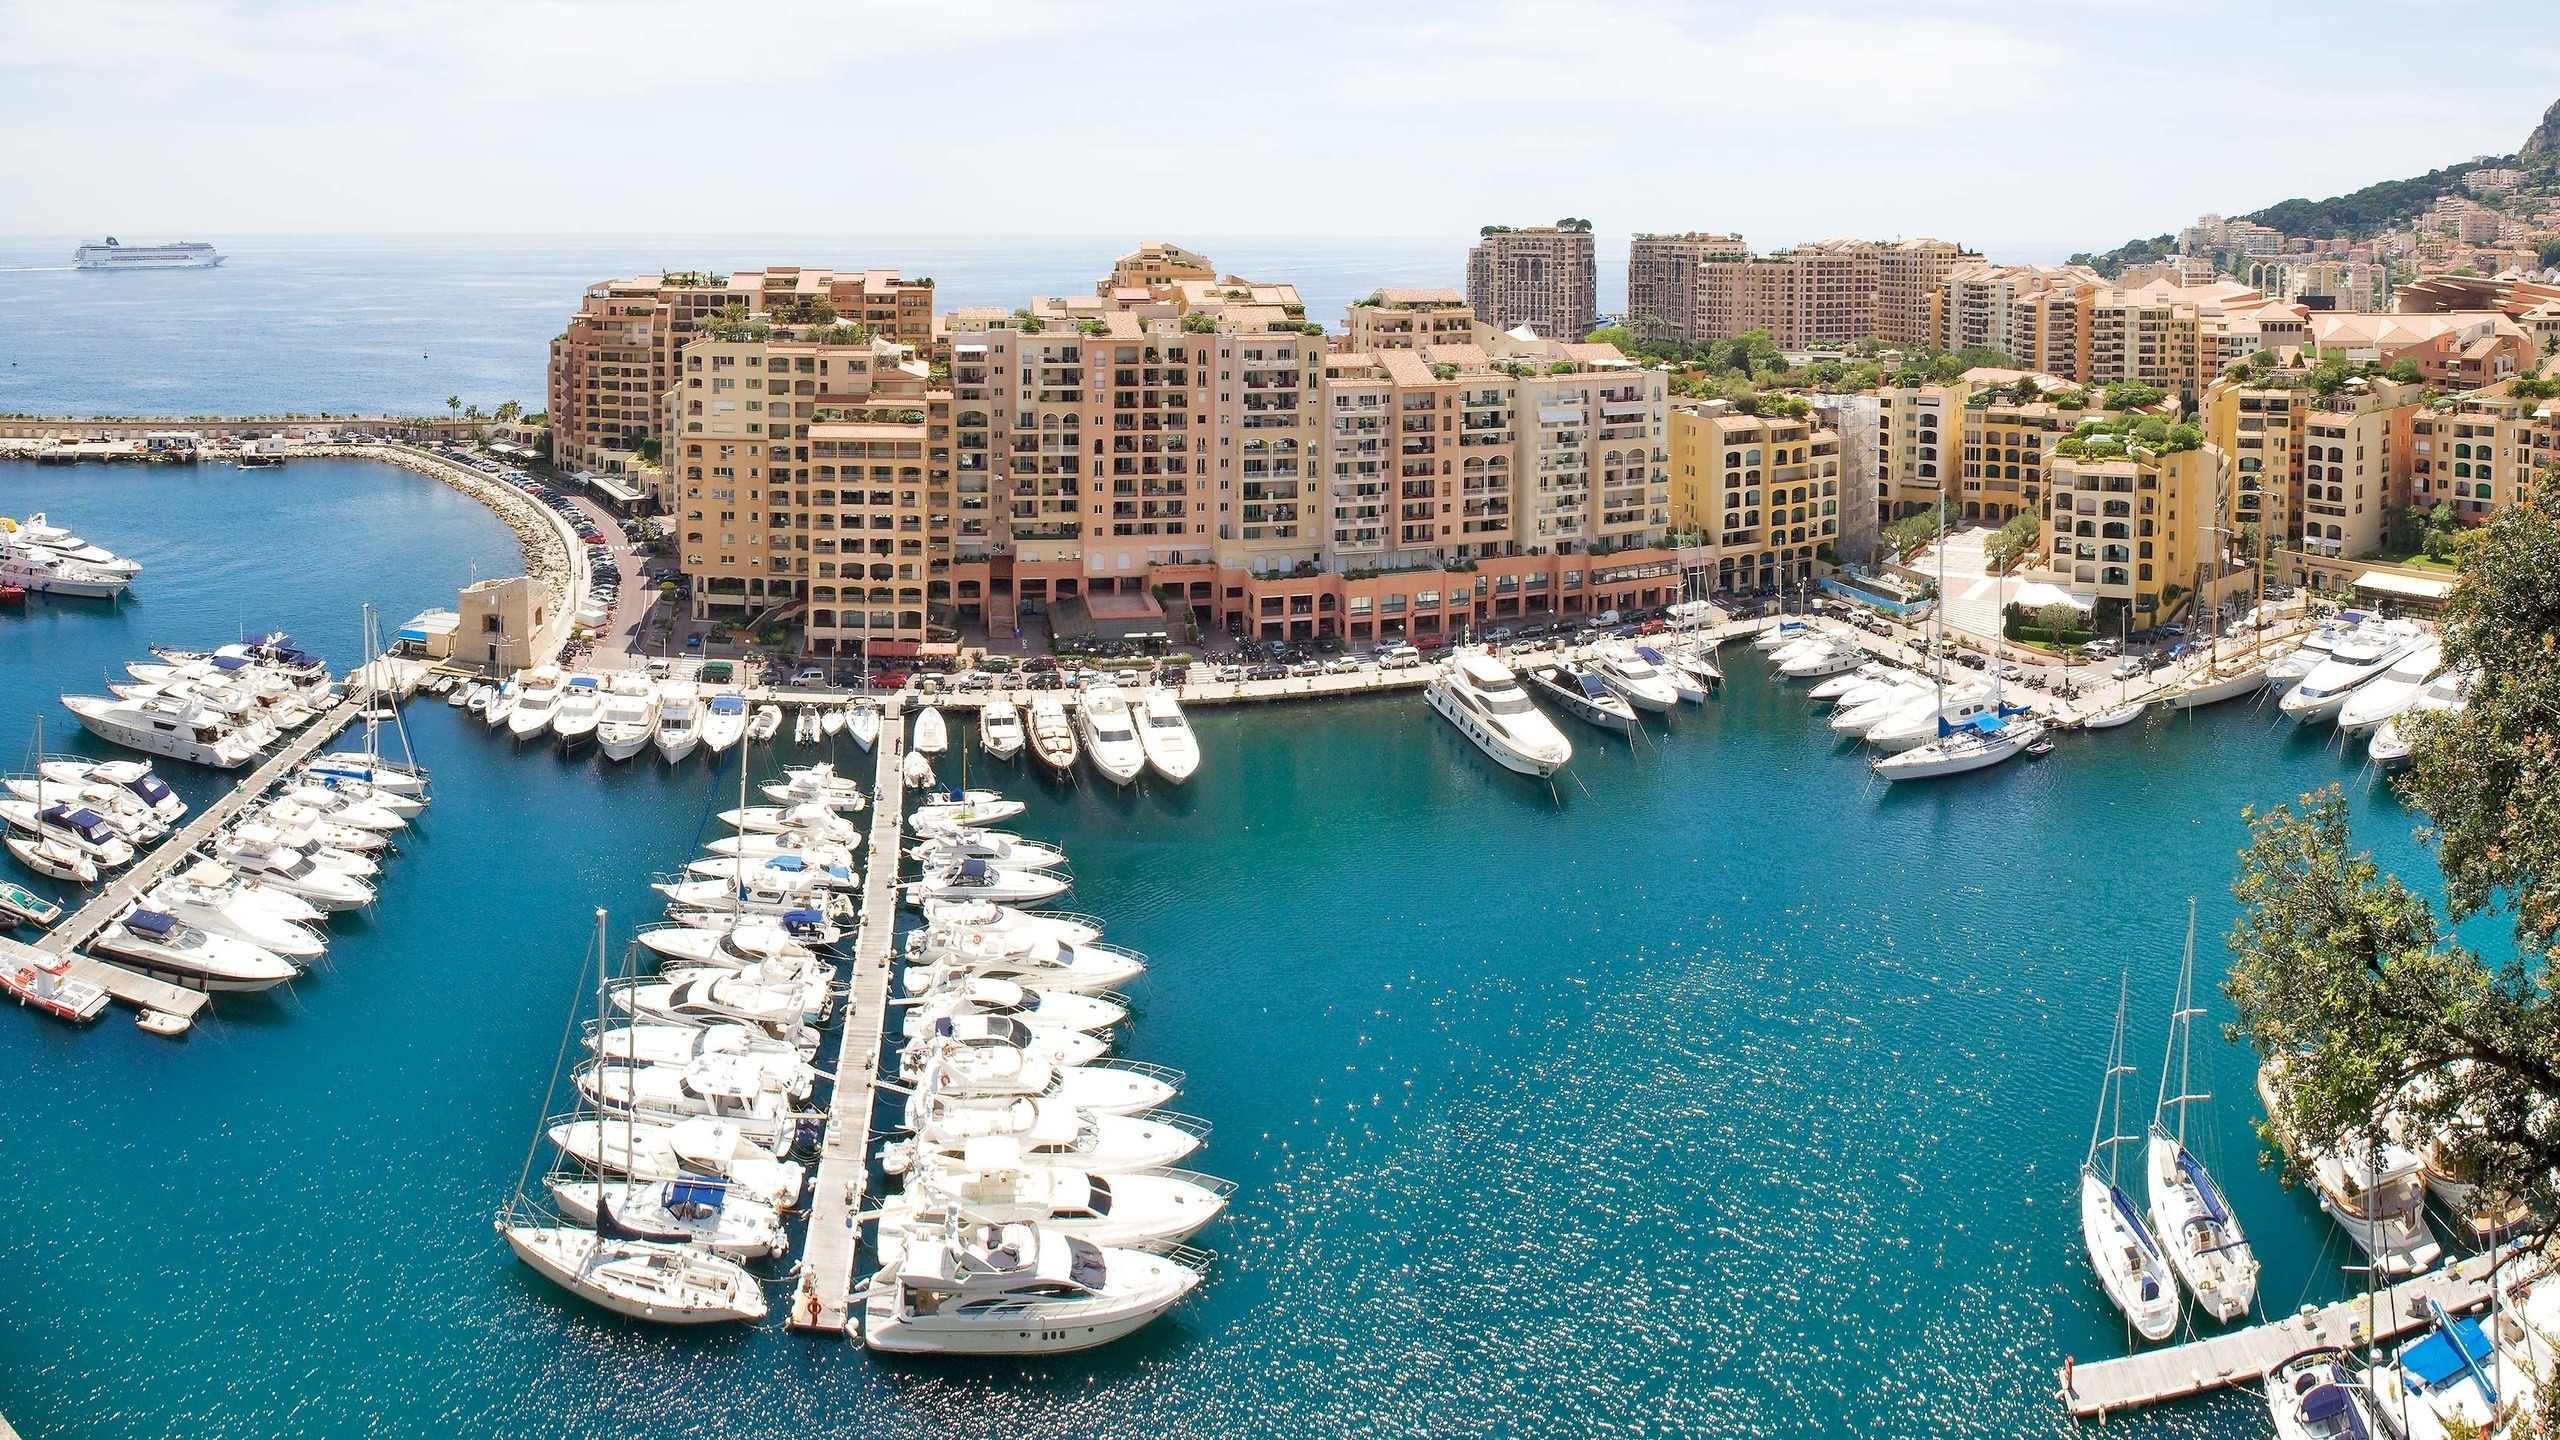 Monaco Port for 2560x1440 HDTV resolution